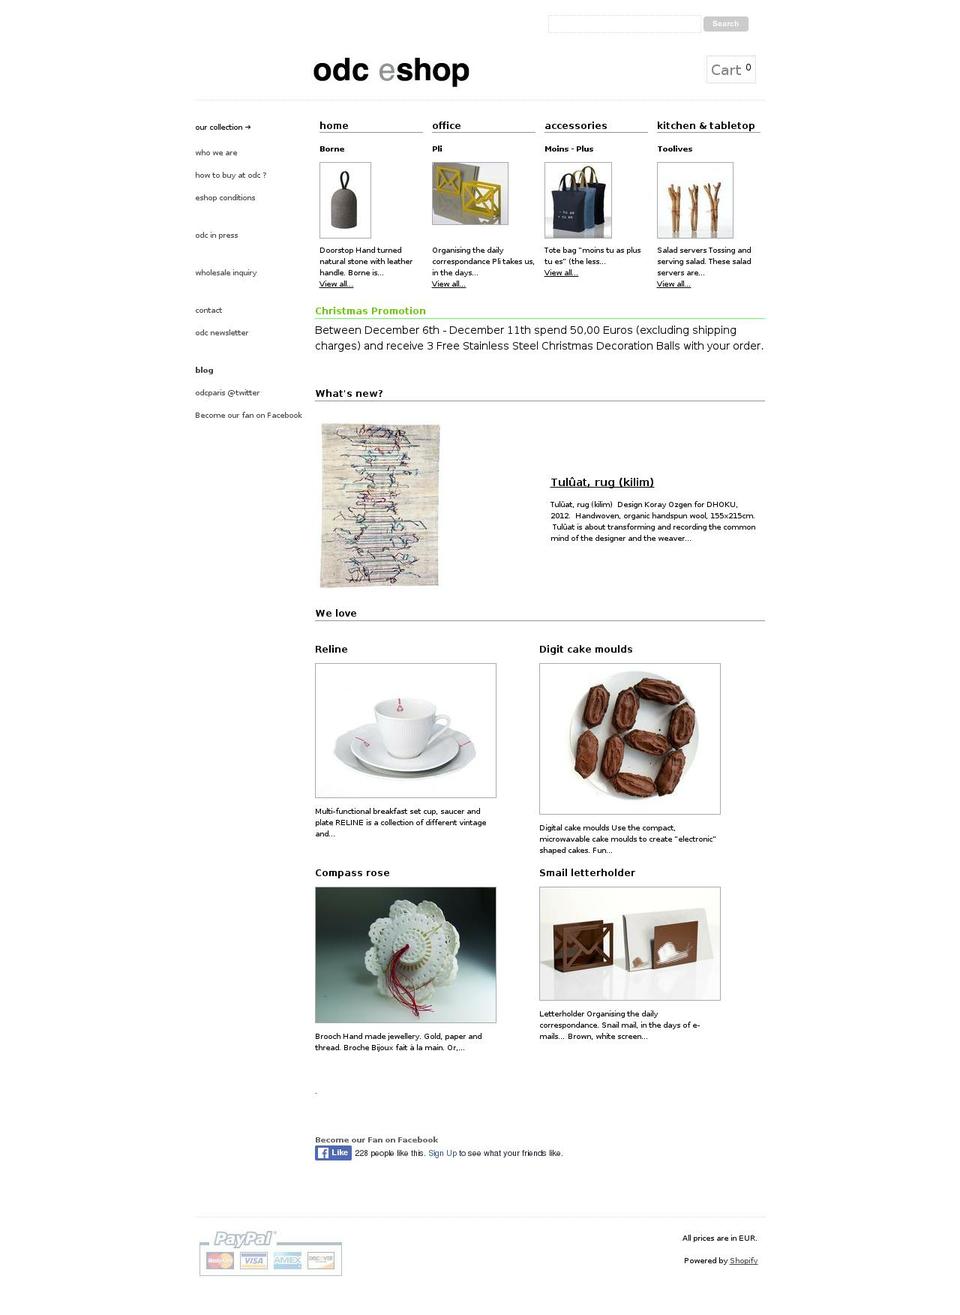 odc-paris.com shopify website screenshot